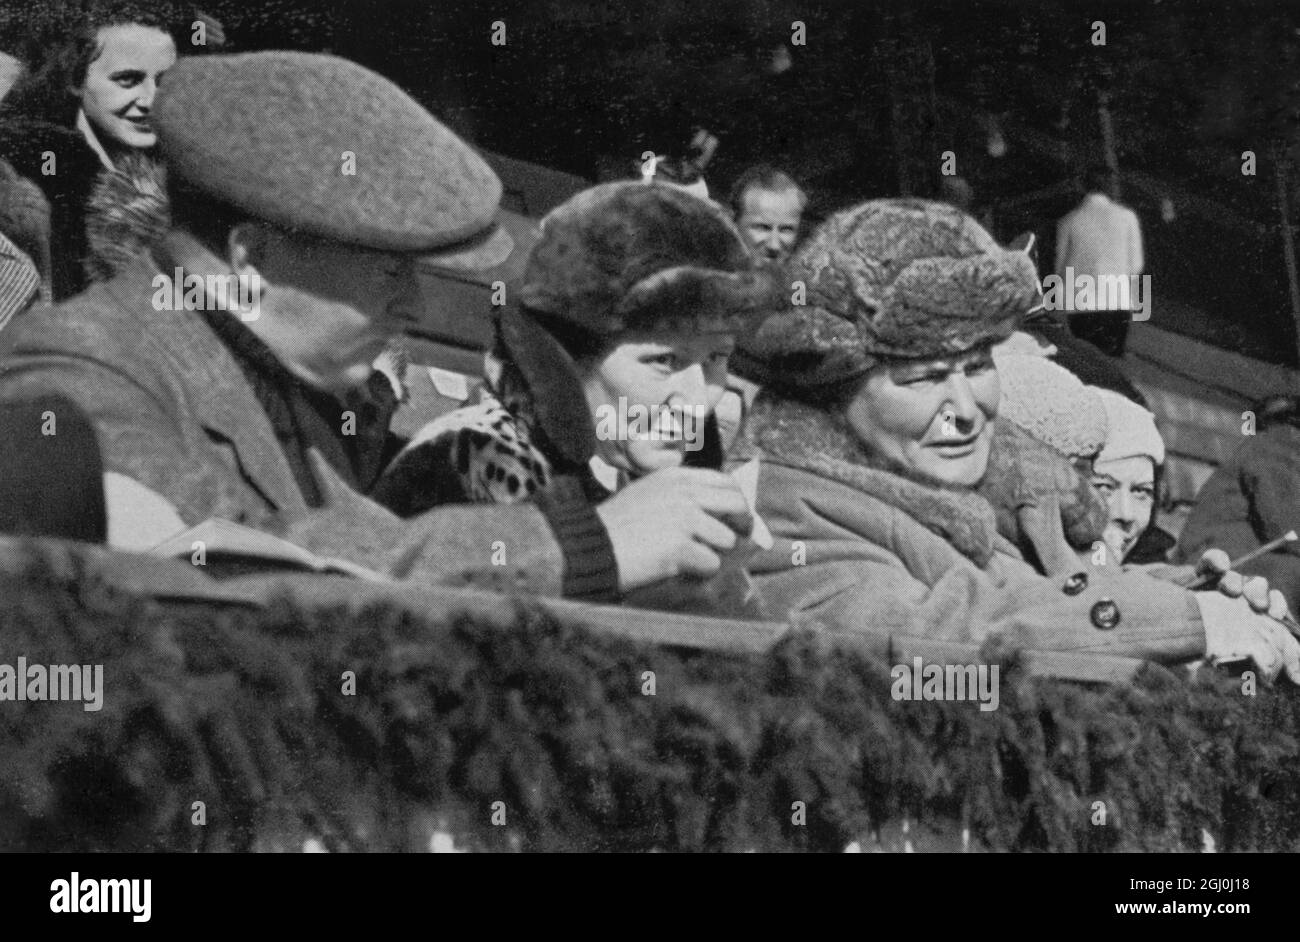 Il presidente Hermann Goring guarda l'hockey su ghiaccio nello stadio di pattinaggio su ghiaccio. Hermann Wilhelm Göring (anche Goering in inglese) (12 gennaio 1893 – 15 ottobre 1946) è stato un politico e leader militare tedesco, un membro di spicco del Partito nazista, secondo al comando del terzo Reich, e comandante della Luftwaffe. ©TopFoto Foto Stock